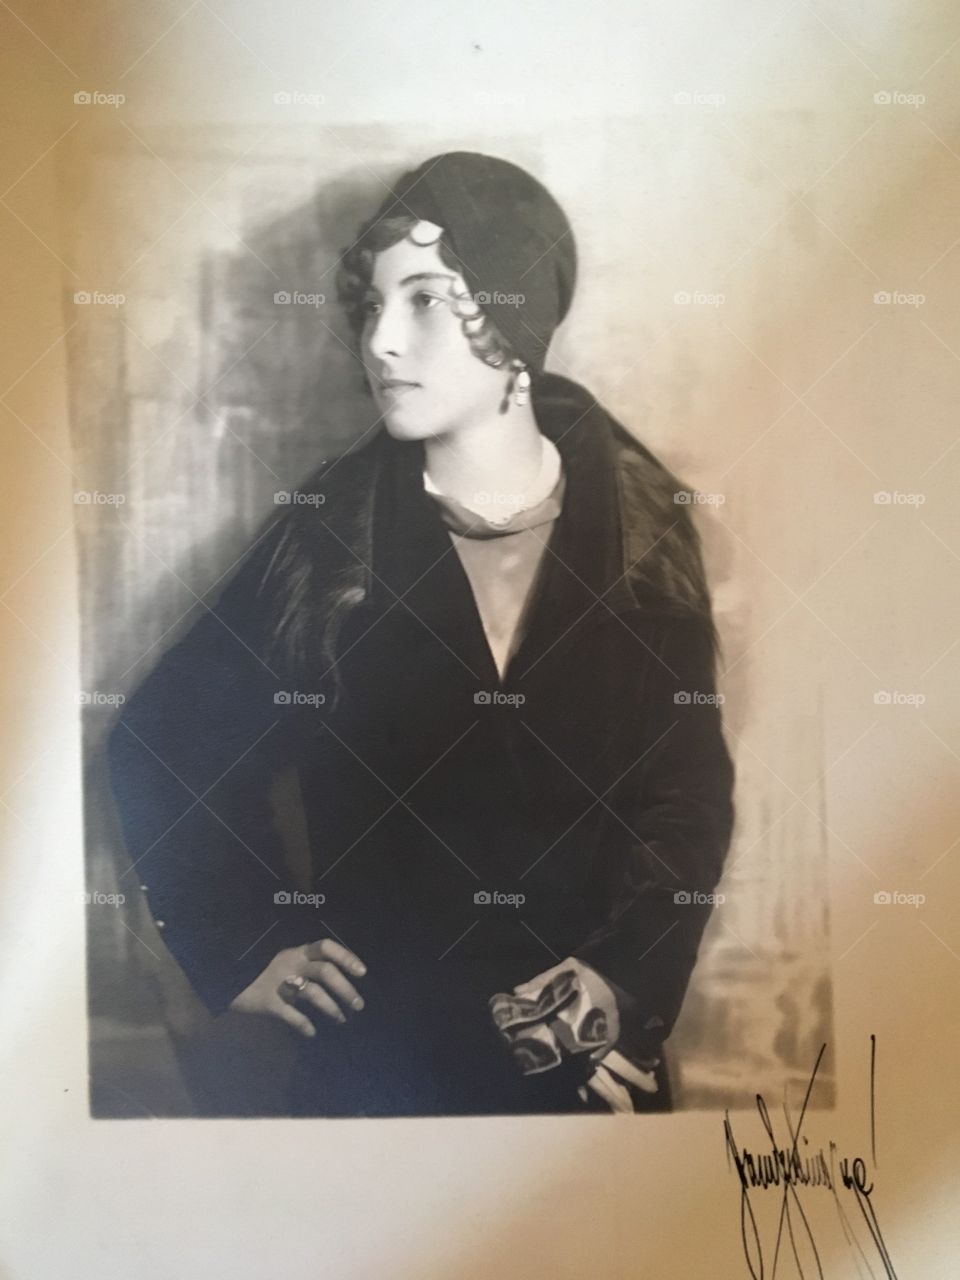 Grandma in 1925